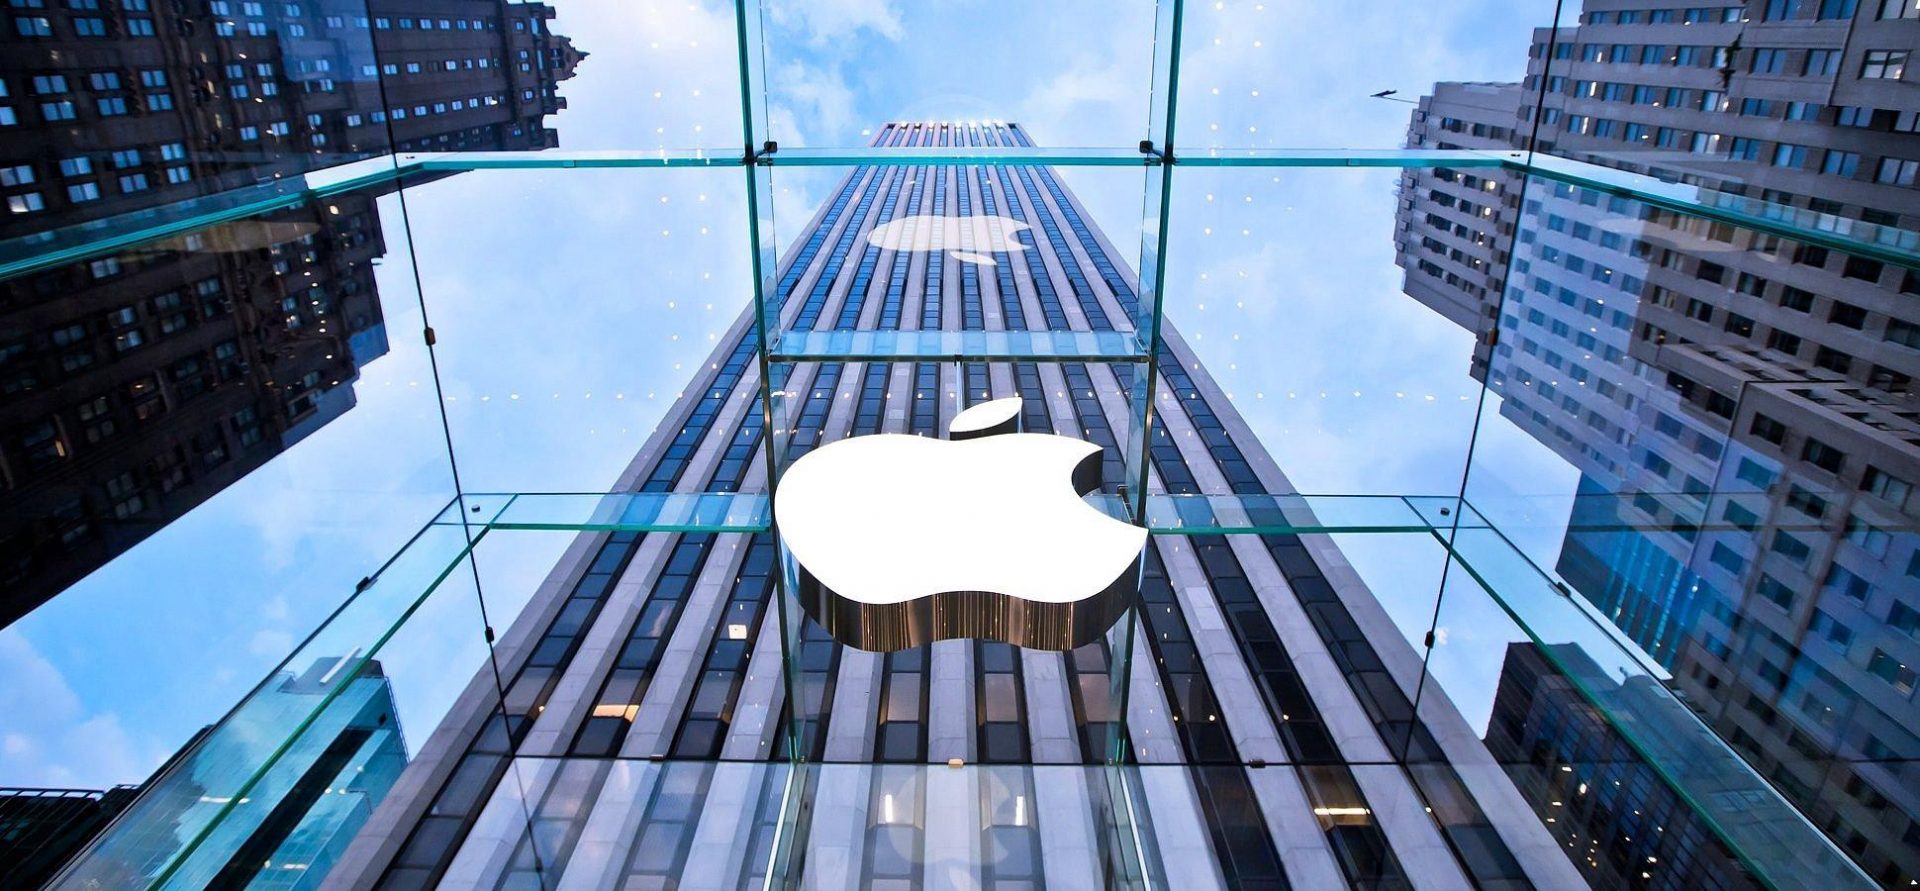  A Apple le robaron 5 millones de euros en iPads y iPhones